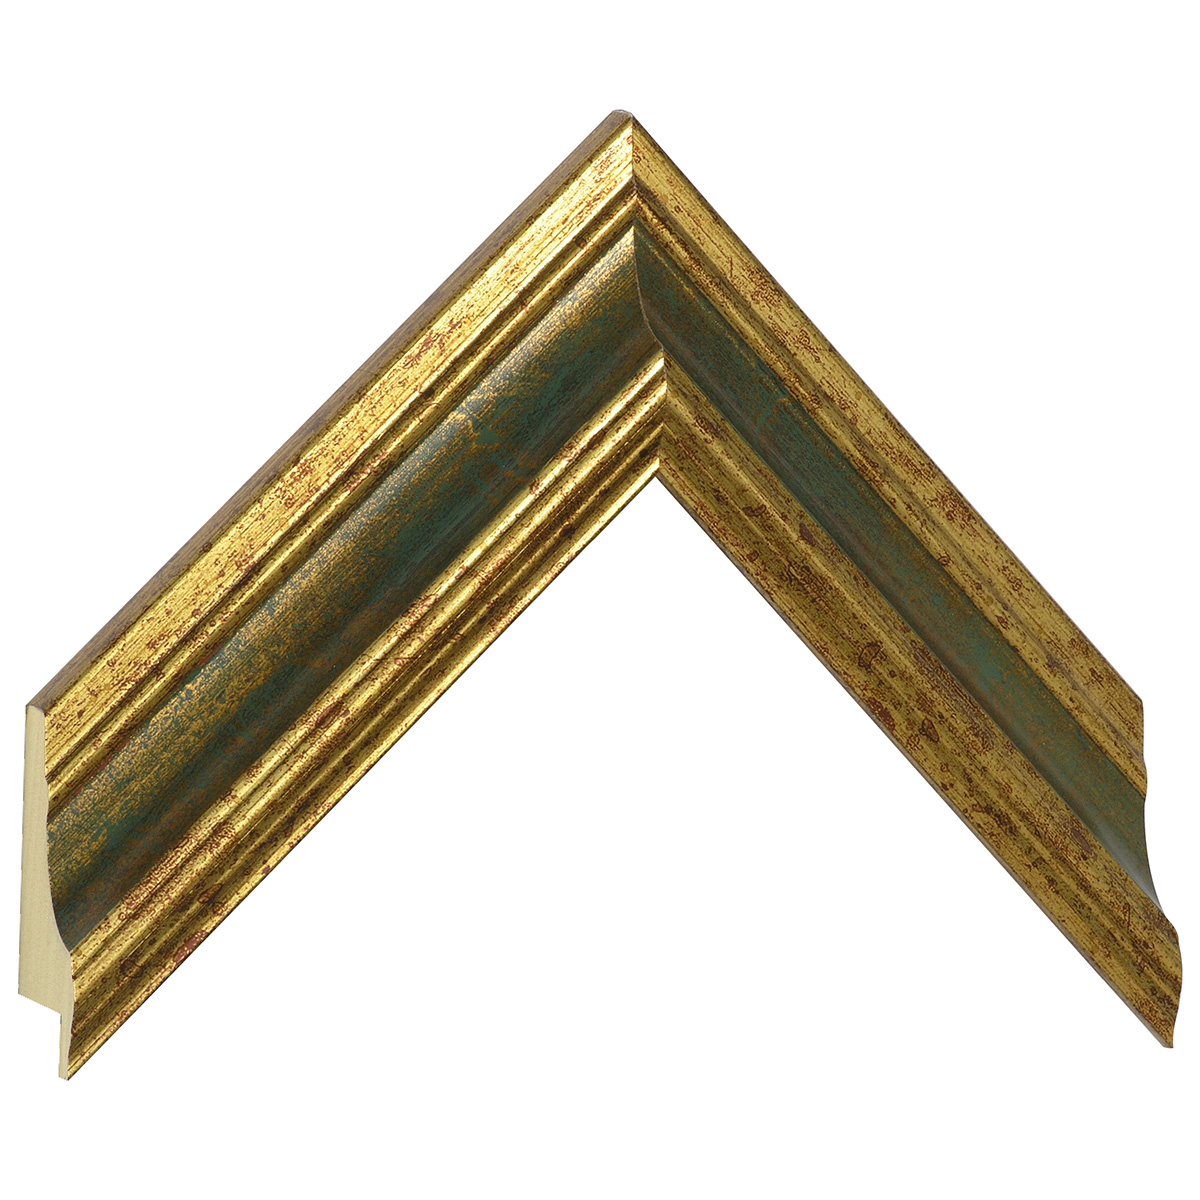 Profil ayous Lăț.44 mm Înălț.32 - finisaj auriu cu bandă verde - Mostră